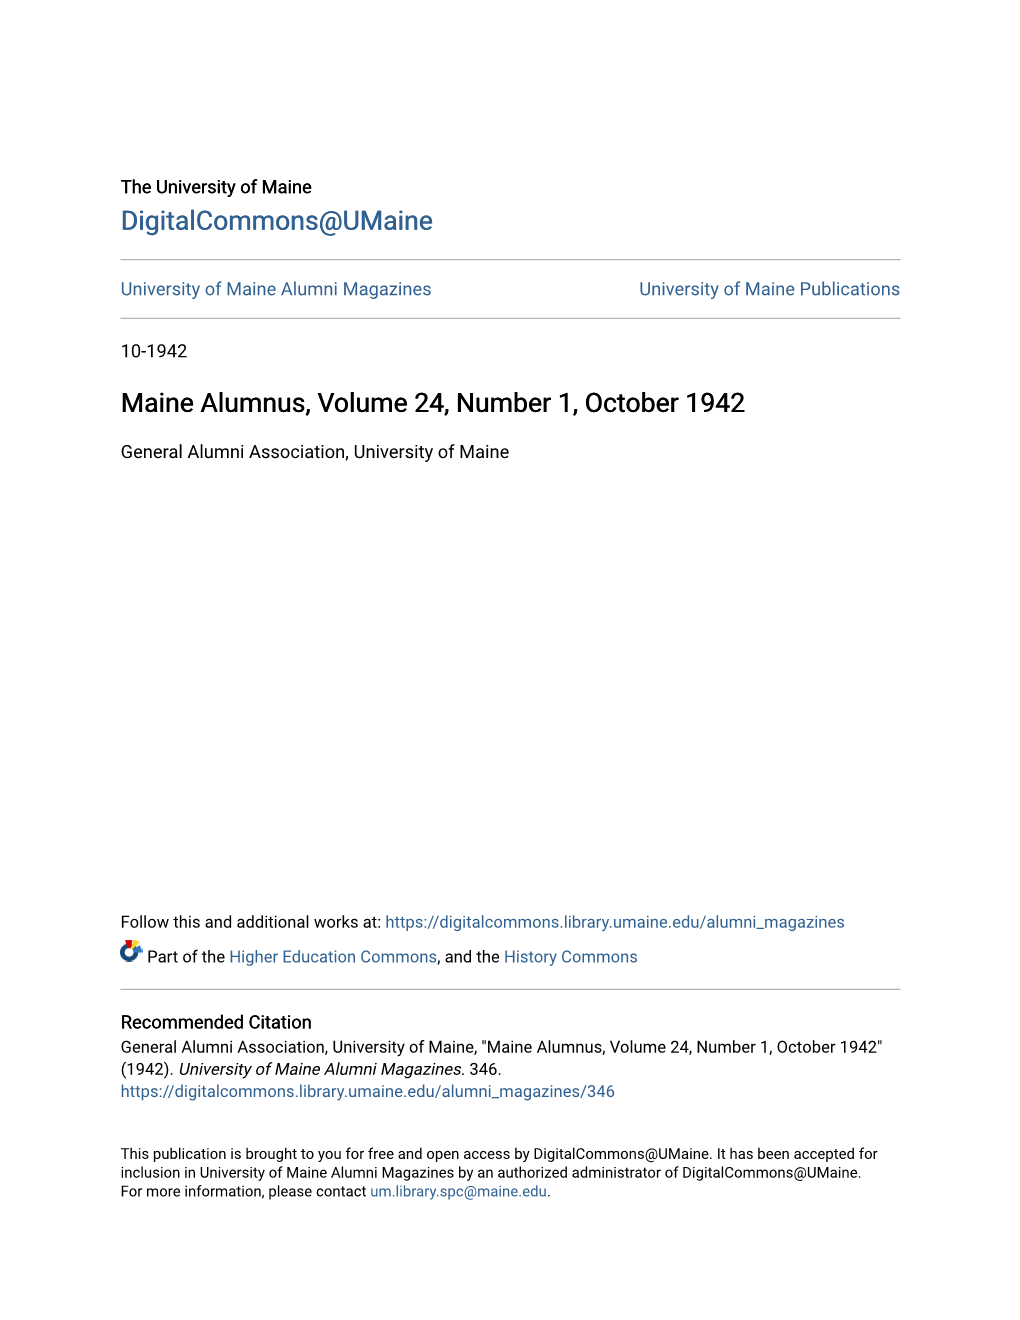 Maine Alumnus, Volume 24, Number 1, October 1942